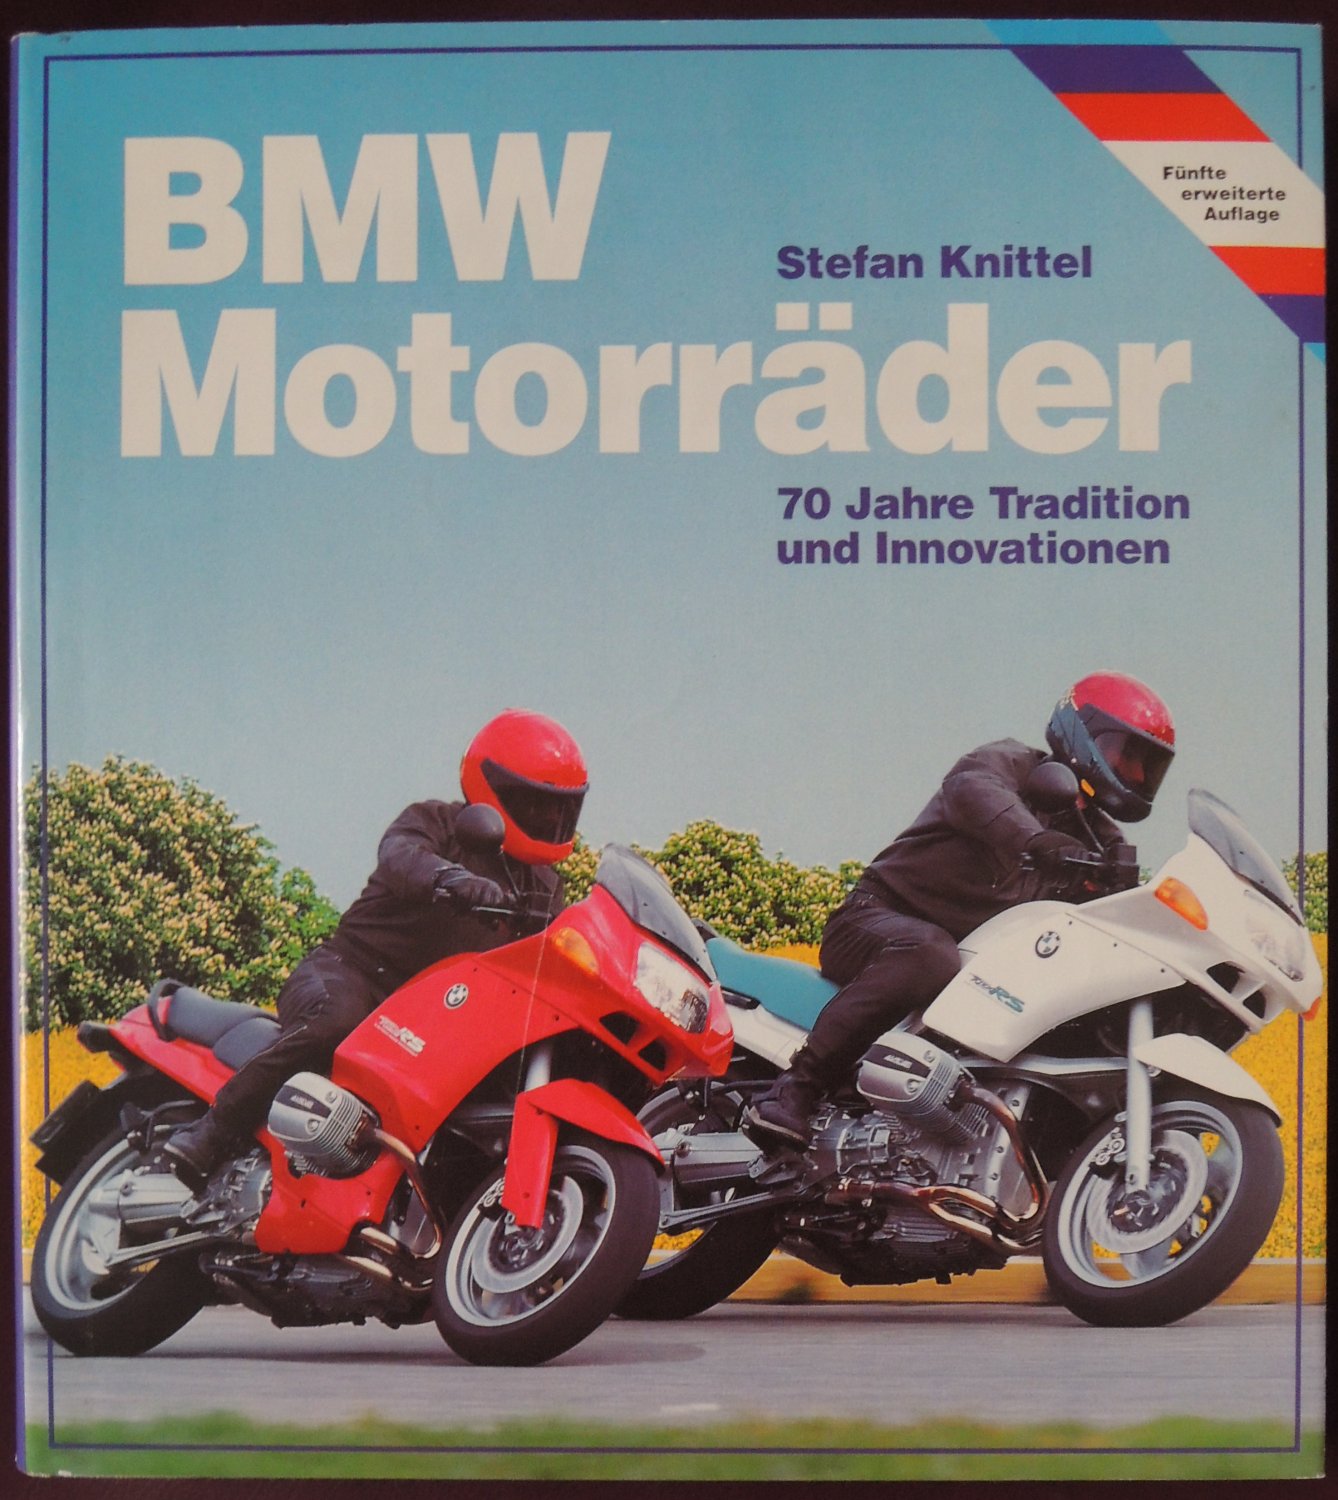 BMW Motorräder * 70 Jahre Tradition und Innovationen“ (Stefan Knittel) –  Buch gebraucht kaufen – A02z56fg01ZZG